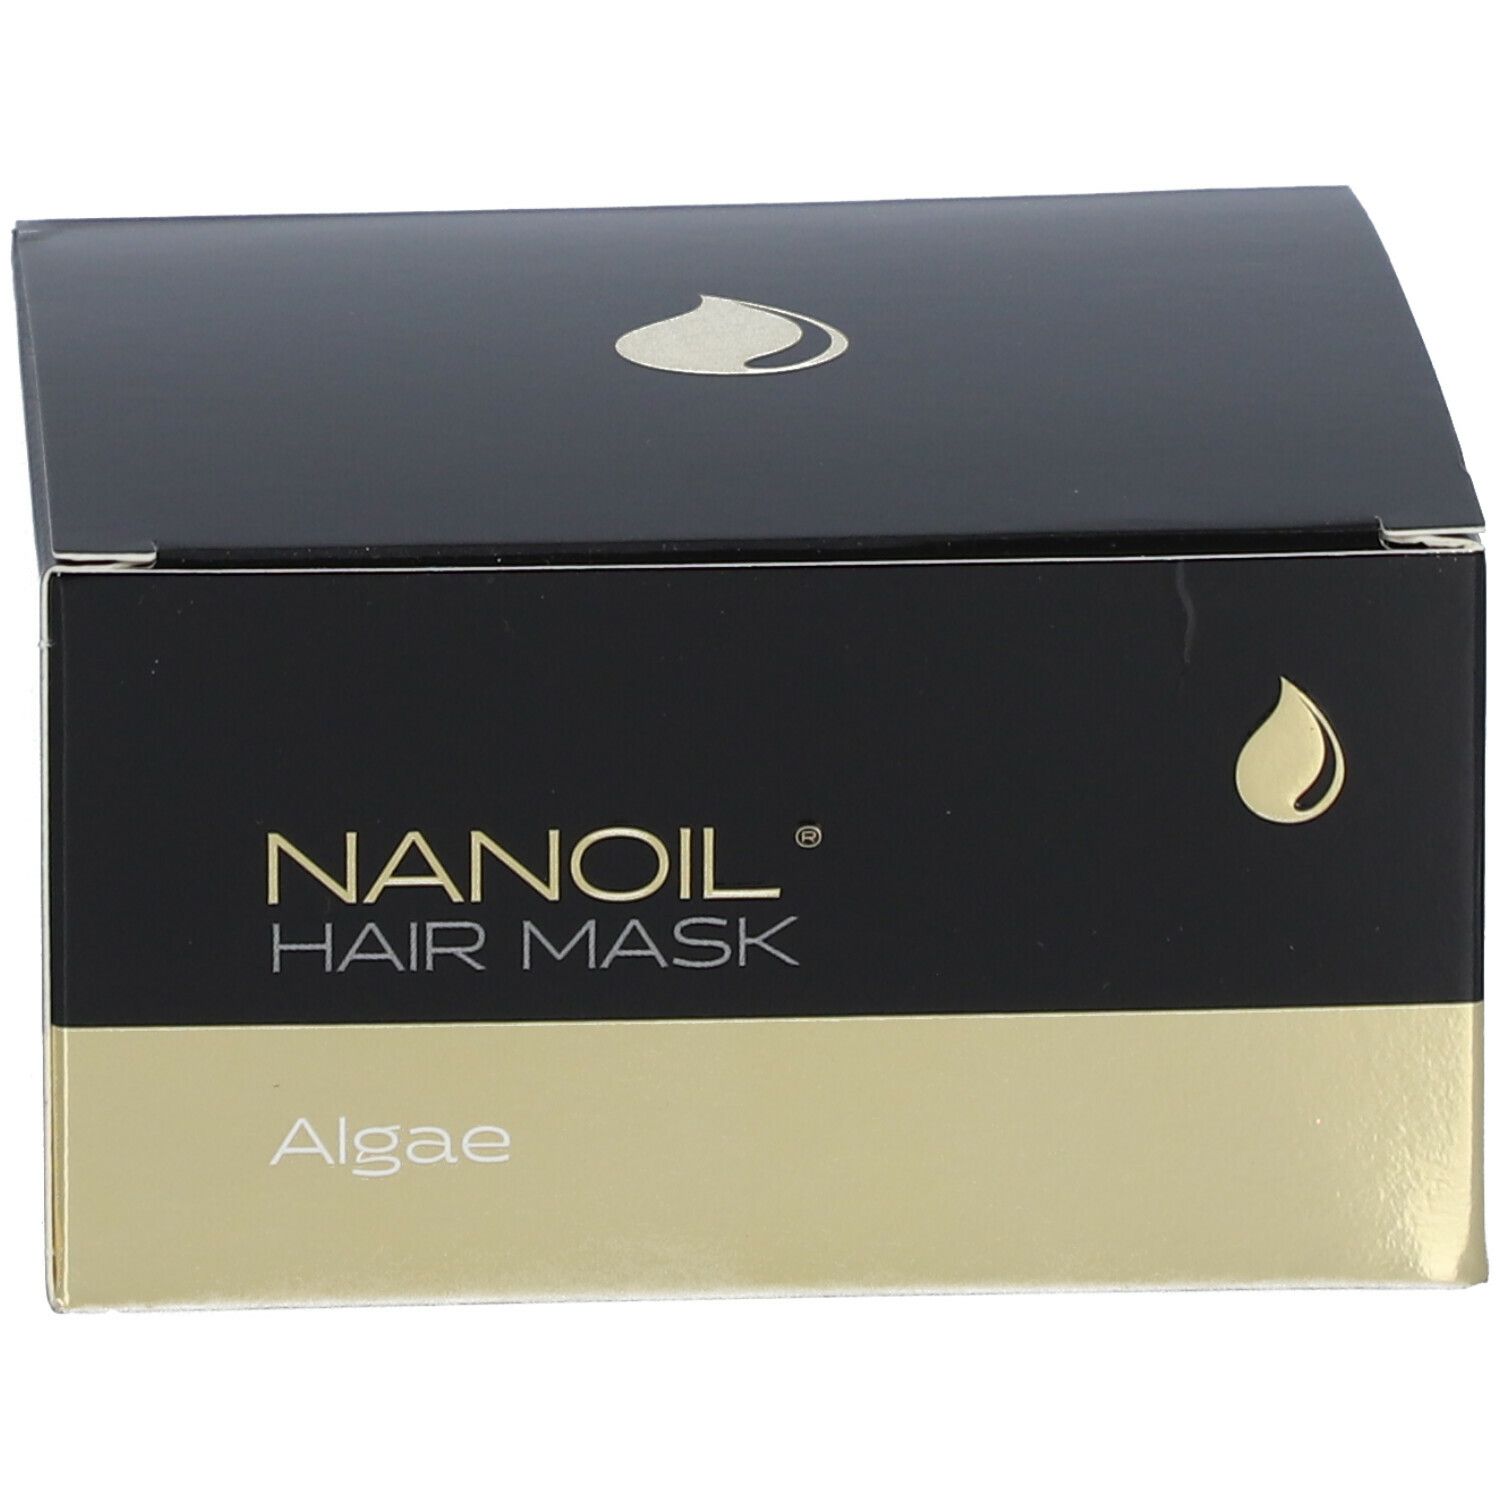 NANOIL® Algae Hair Mask